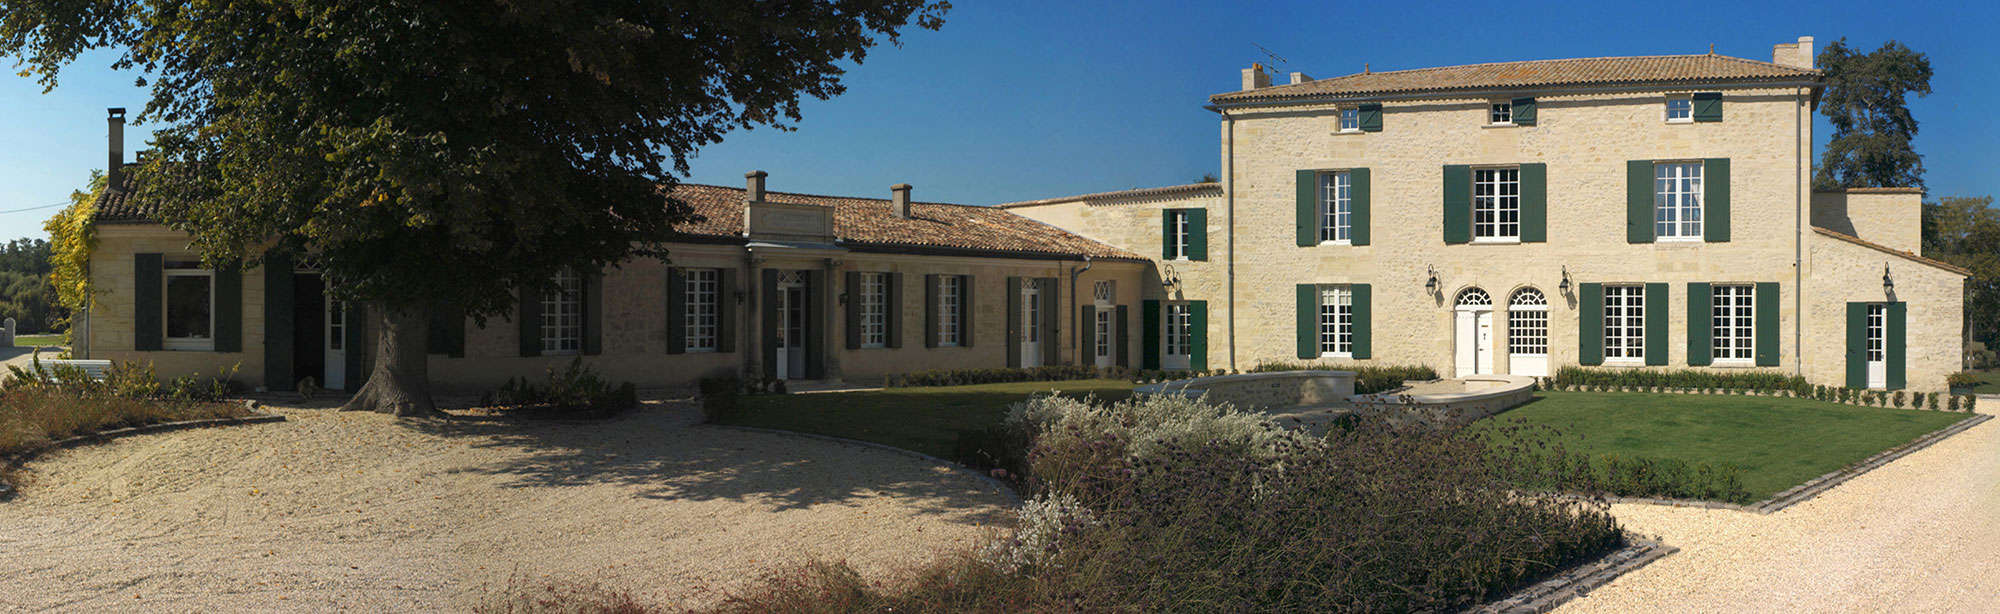 Château Angludet